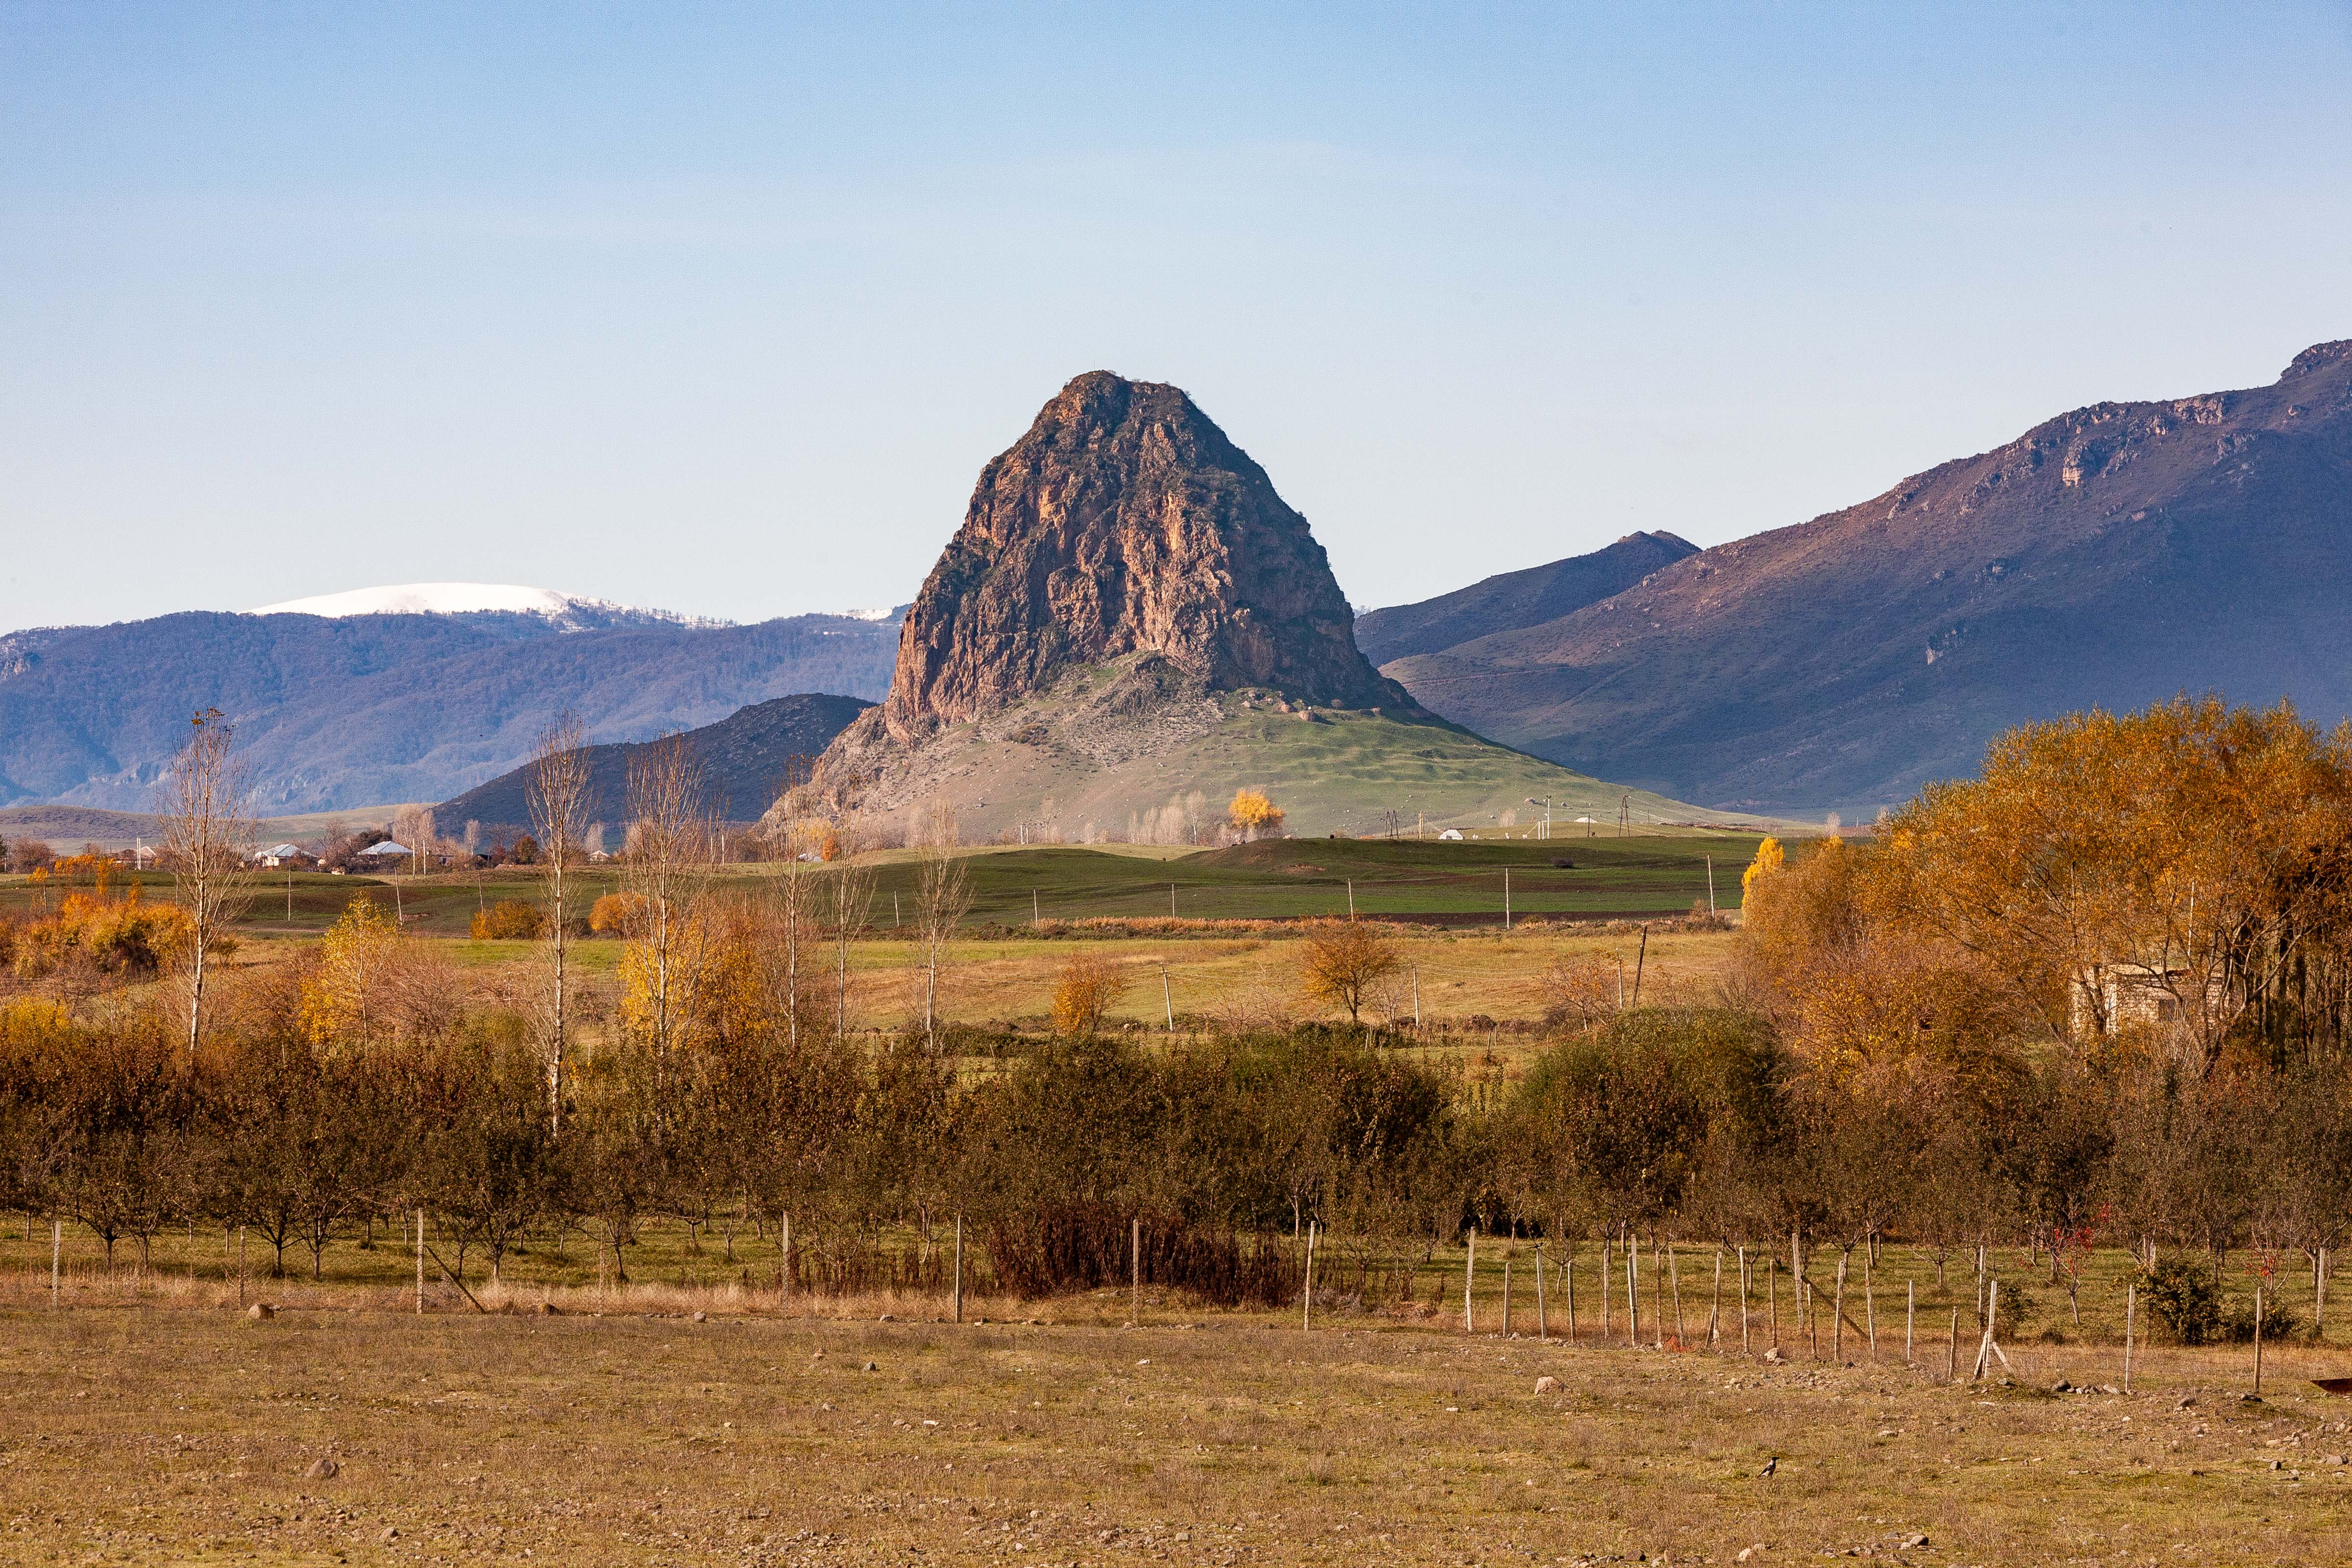 Azerbaijan, Qazax Prov, Rock Formation, 2009, IMG 8716